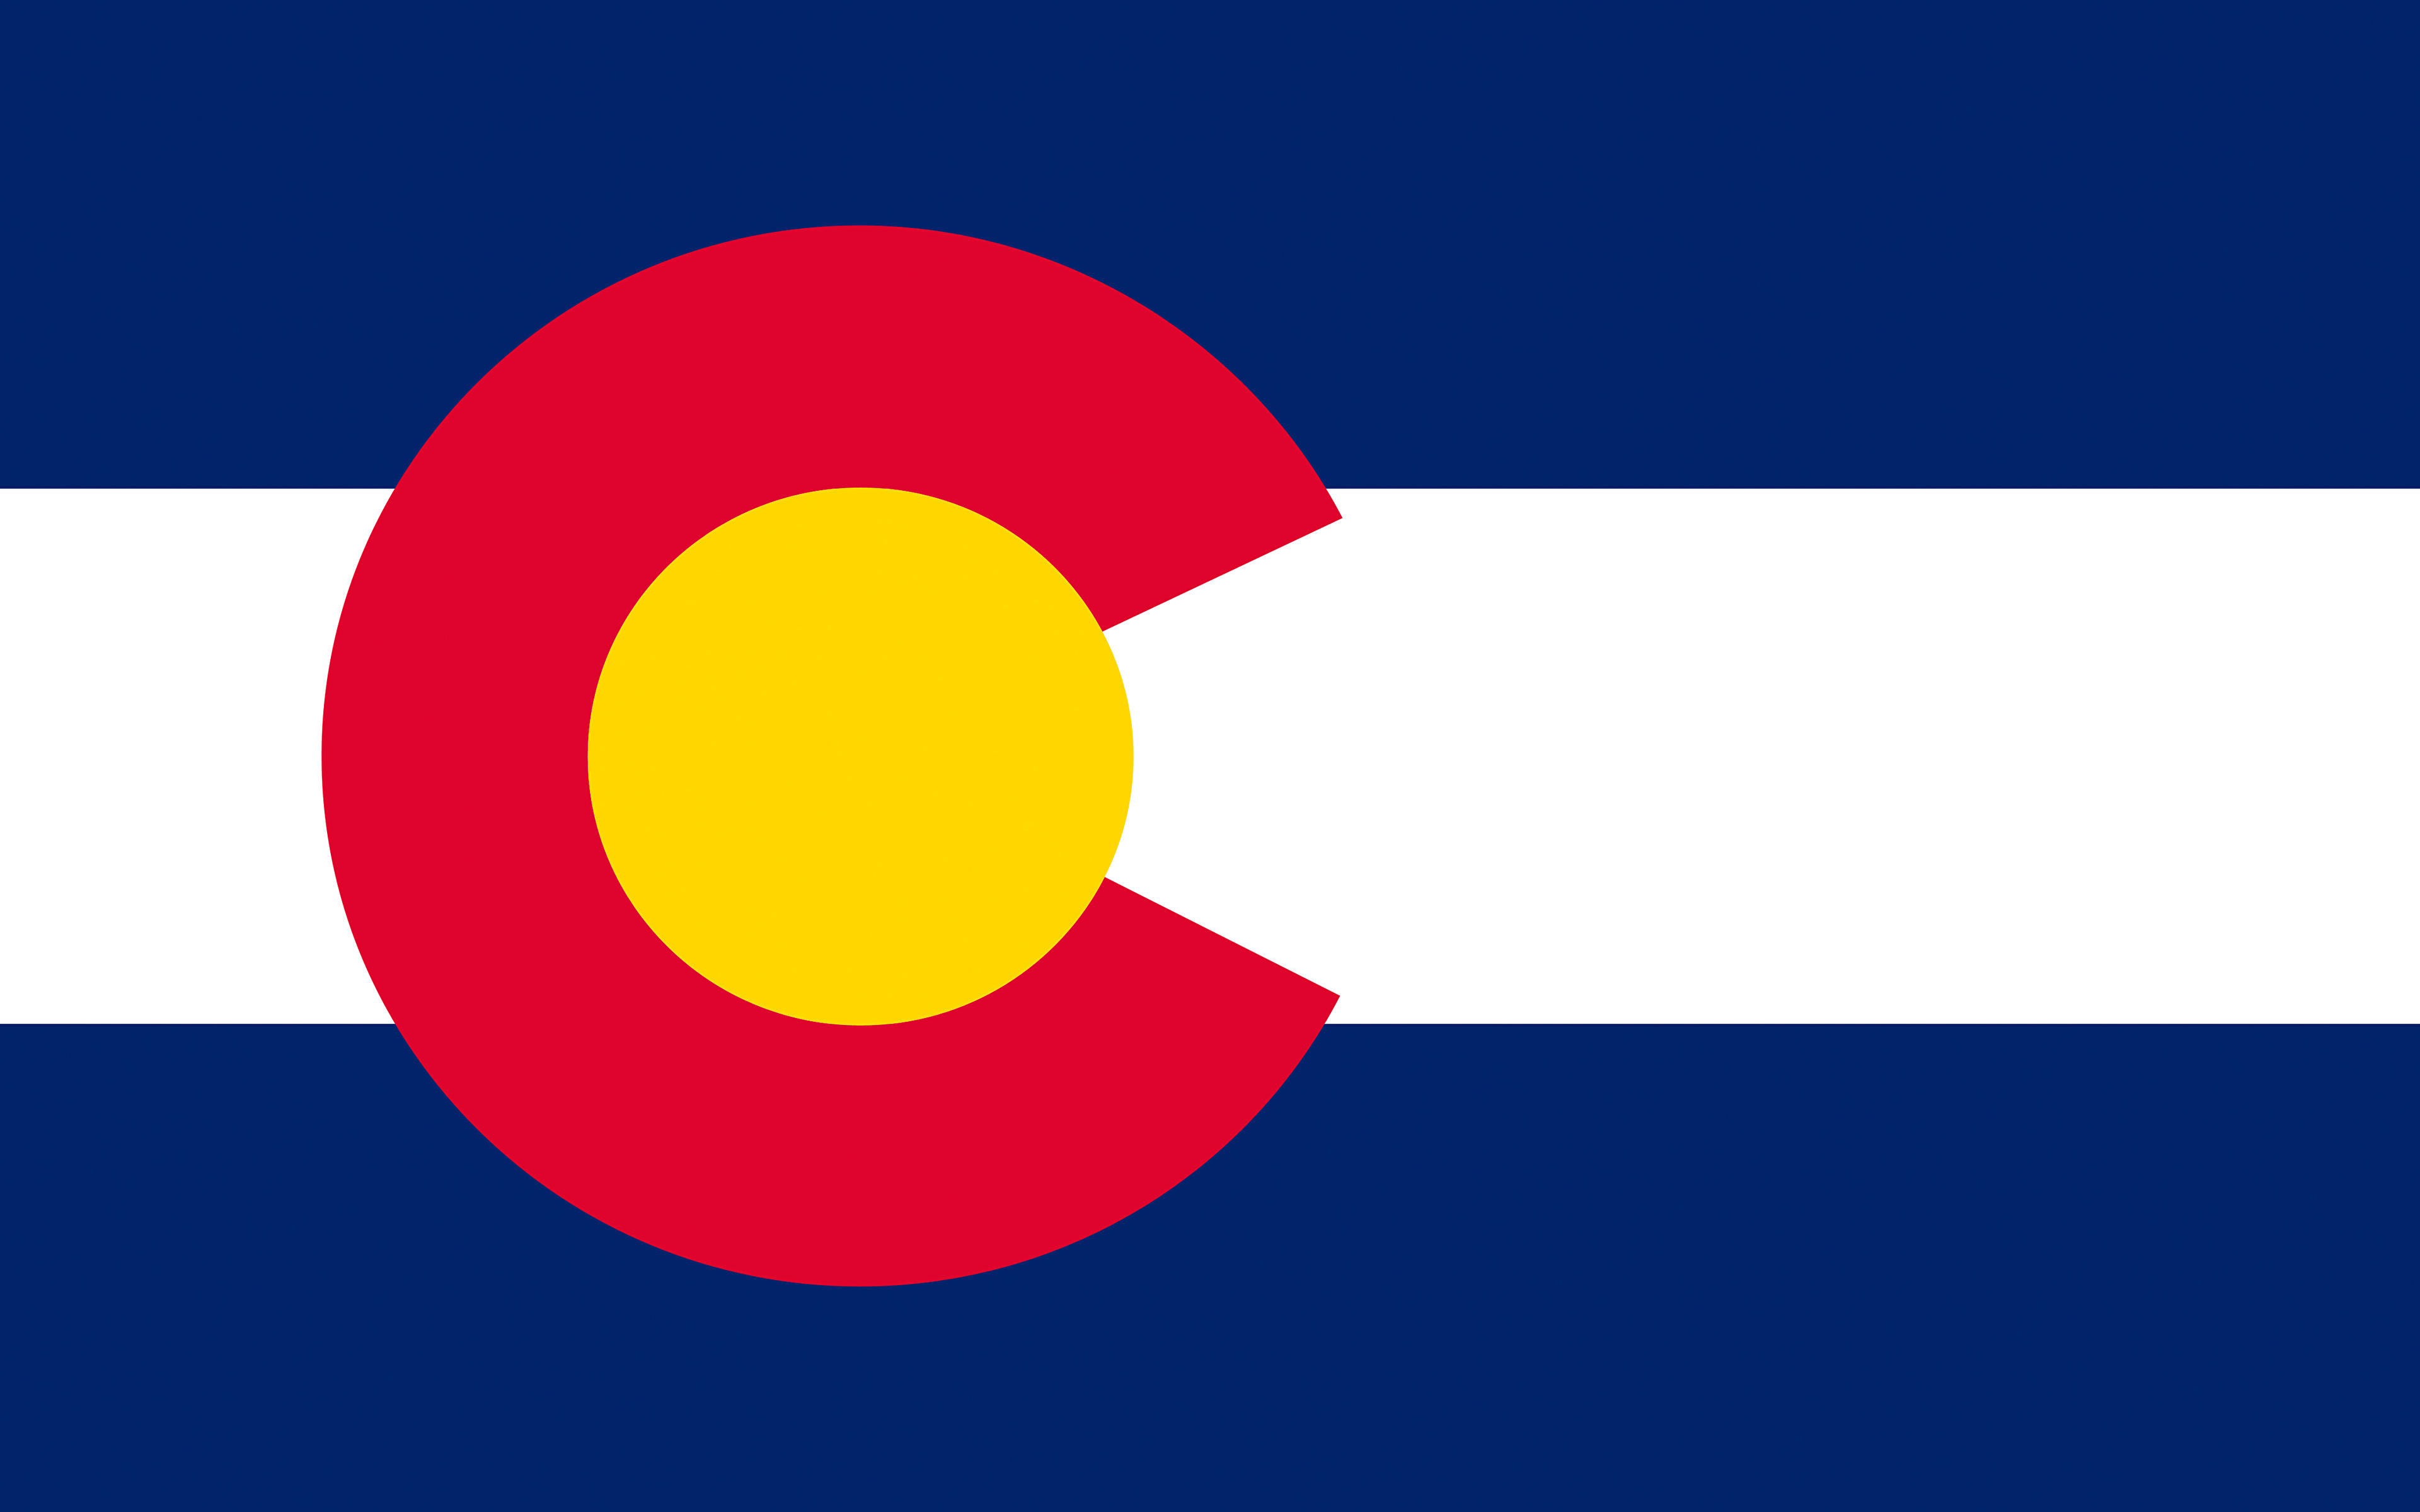 Colorado Flag Image Hd - HD Wallpaper 